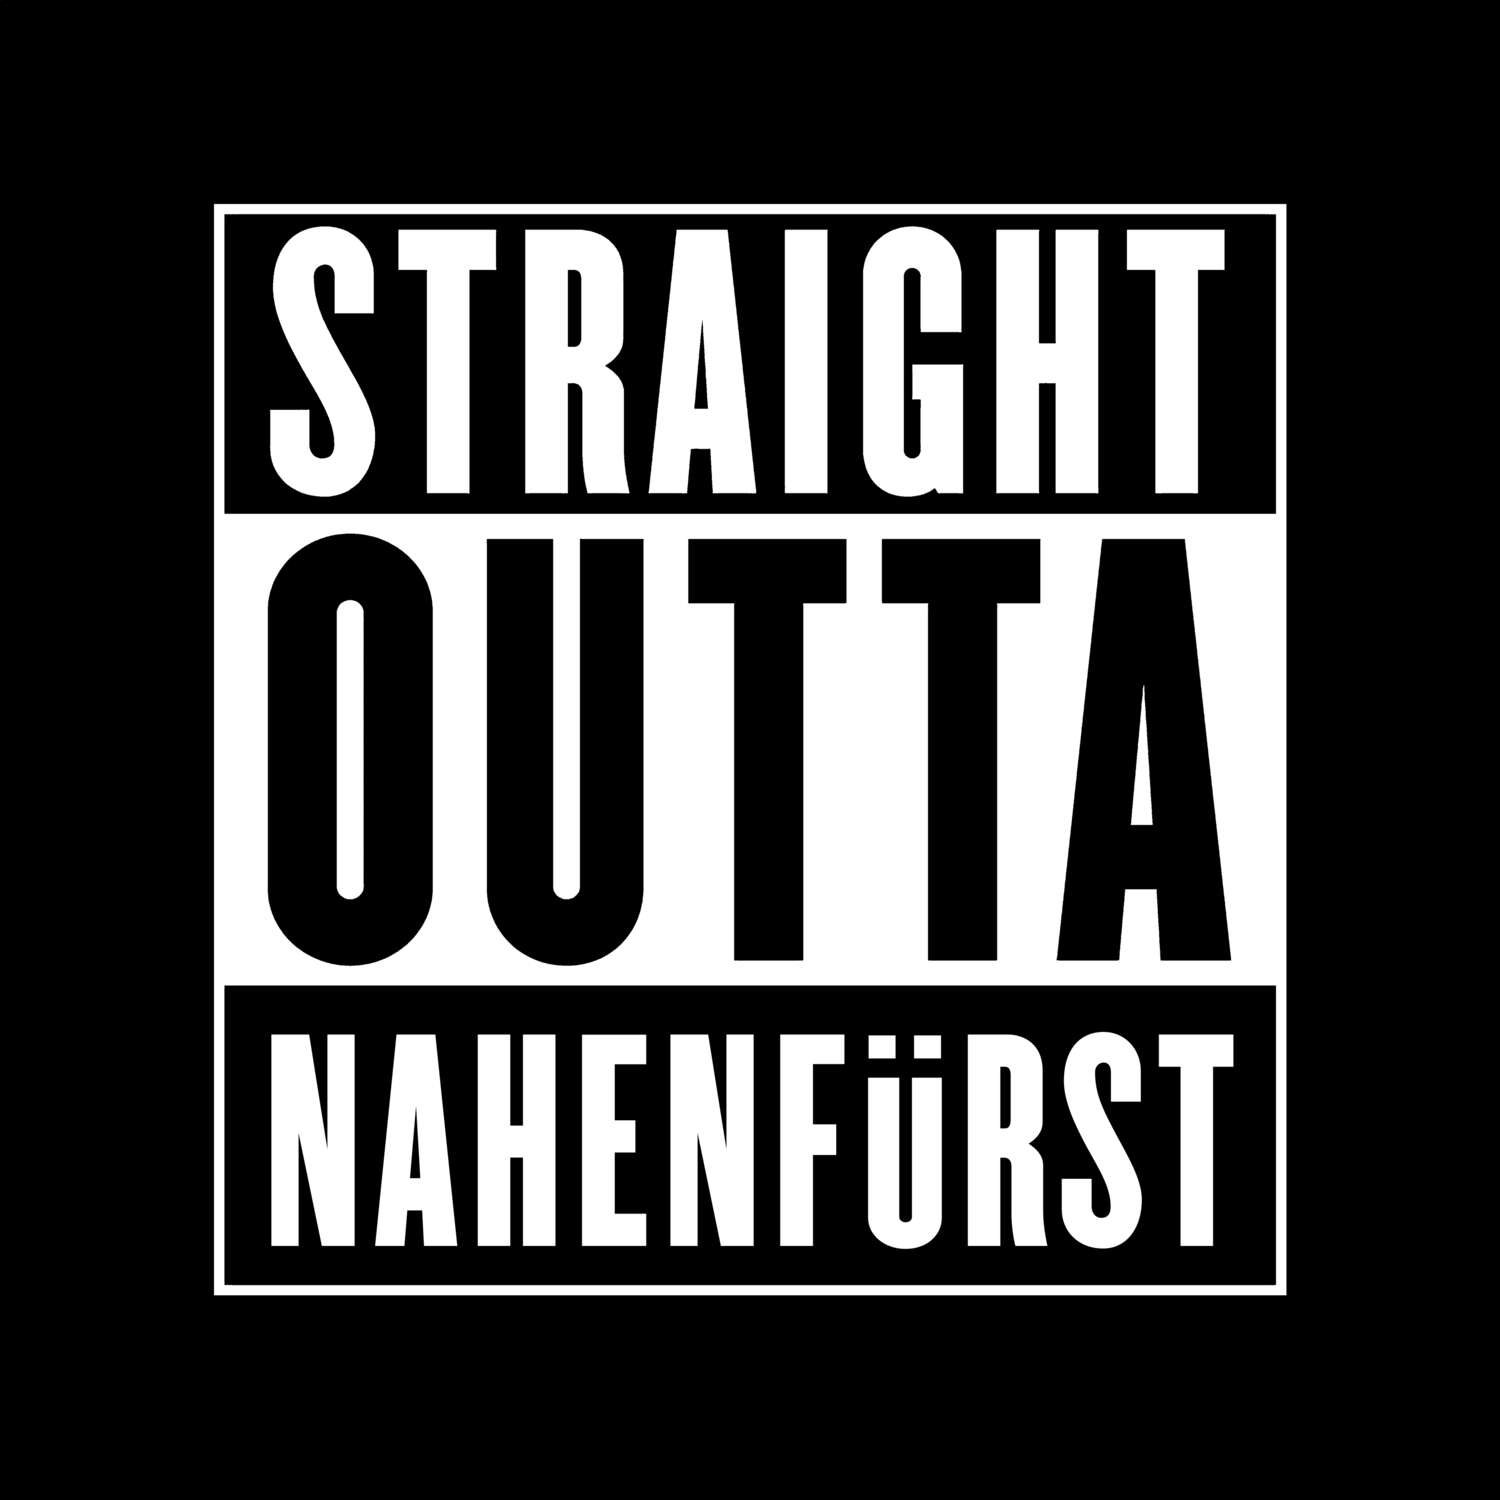 Nahenfürst T-Shirt »Straight Outta«